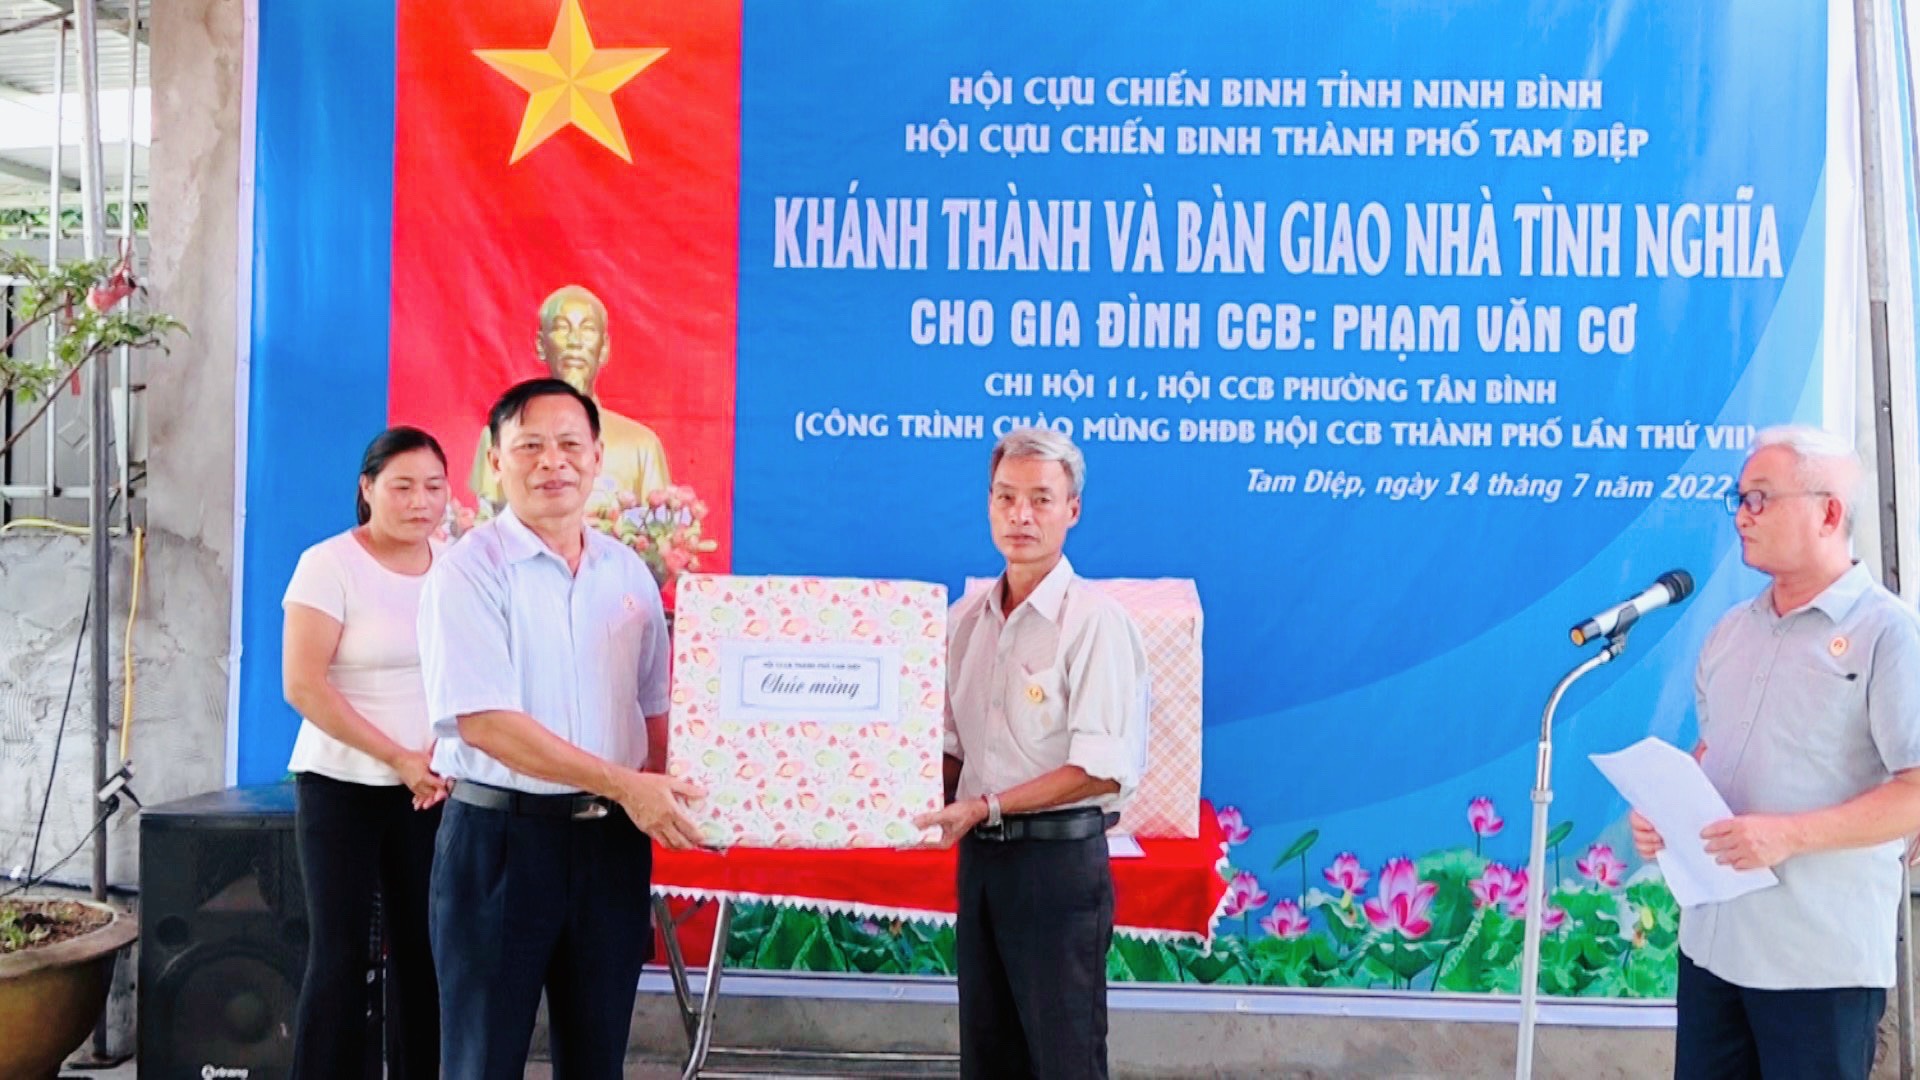 Hội Cựu chiến binh thành phố Tam Điệp tổ chức Lễ bàn giao nhà tình nghĩa cho gia đình hội viên CCB Phạm Văn Cơ